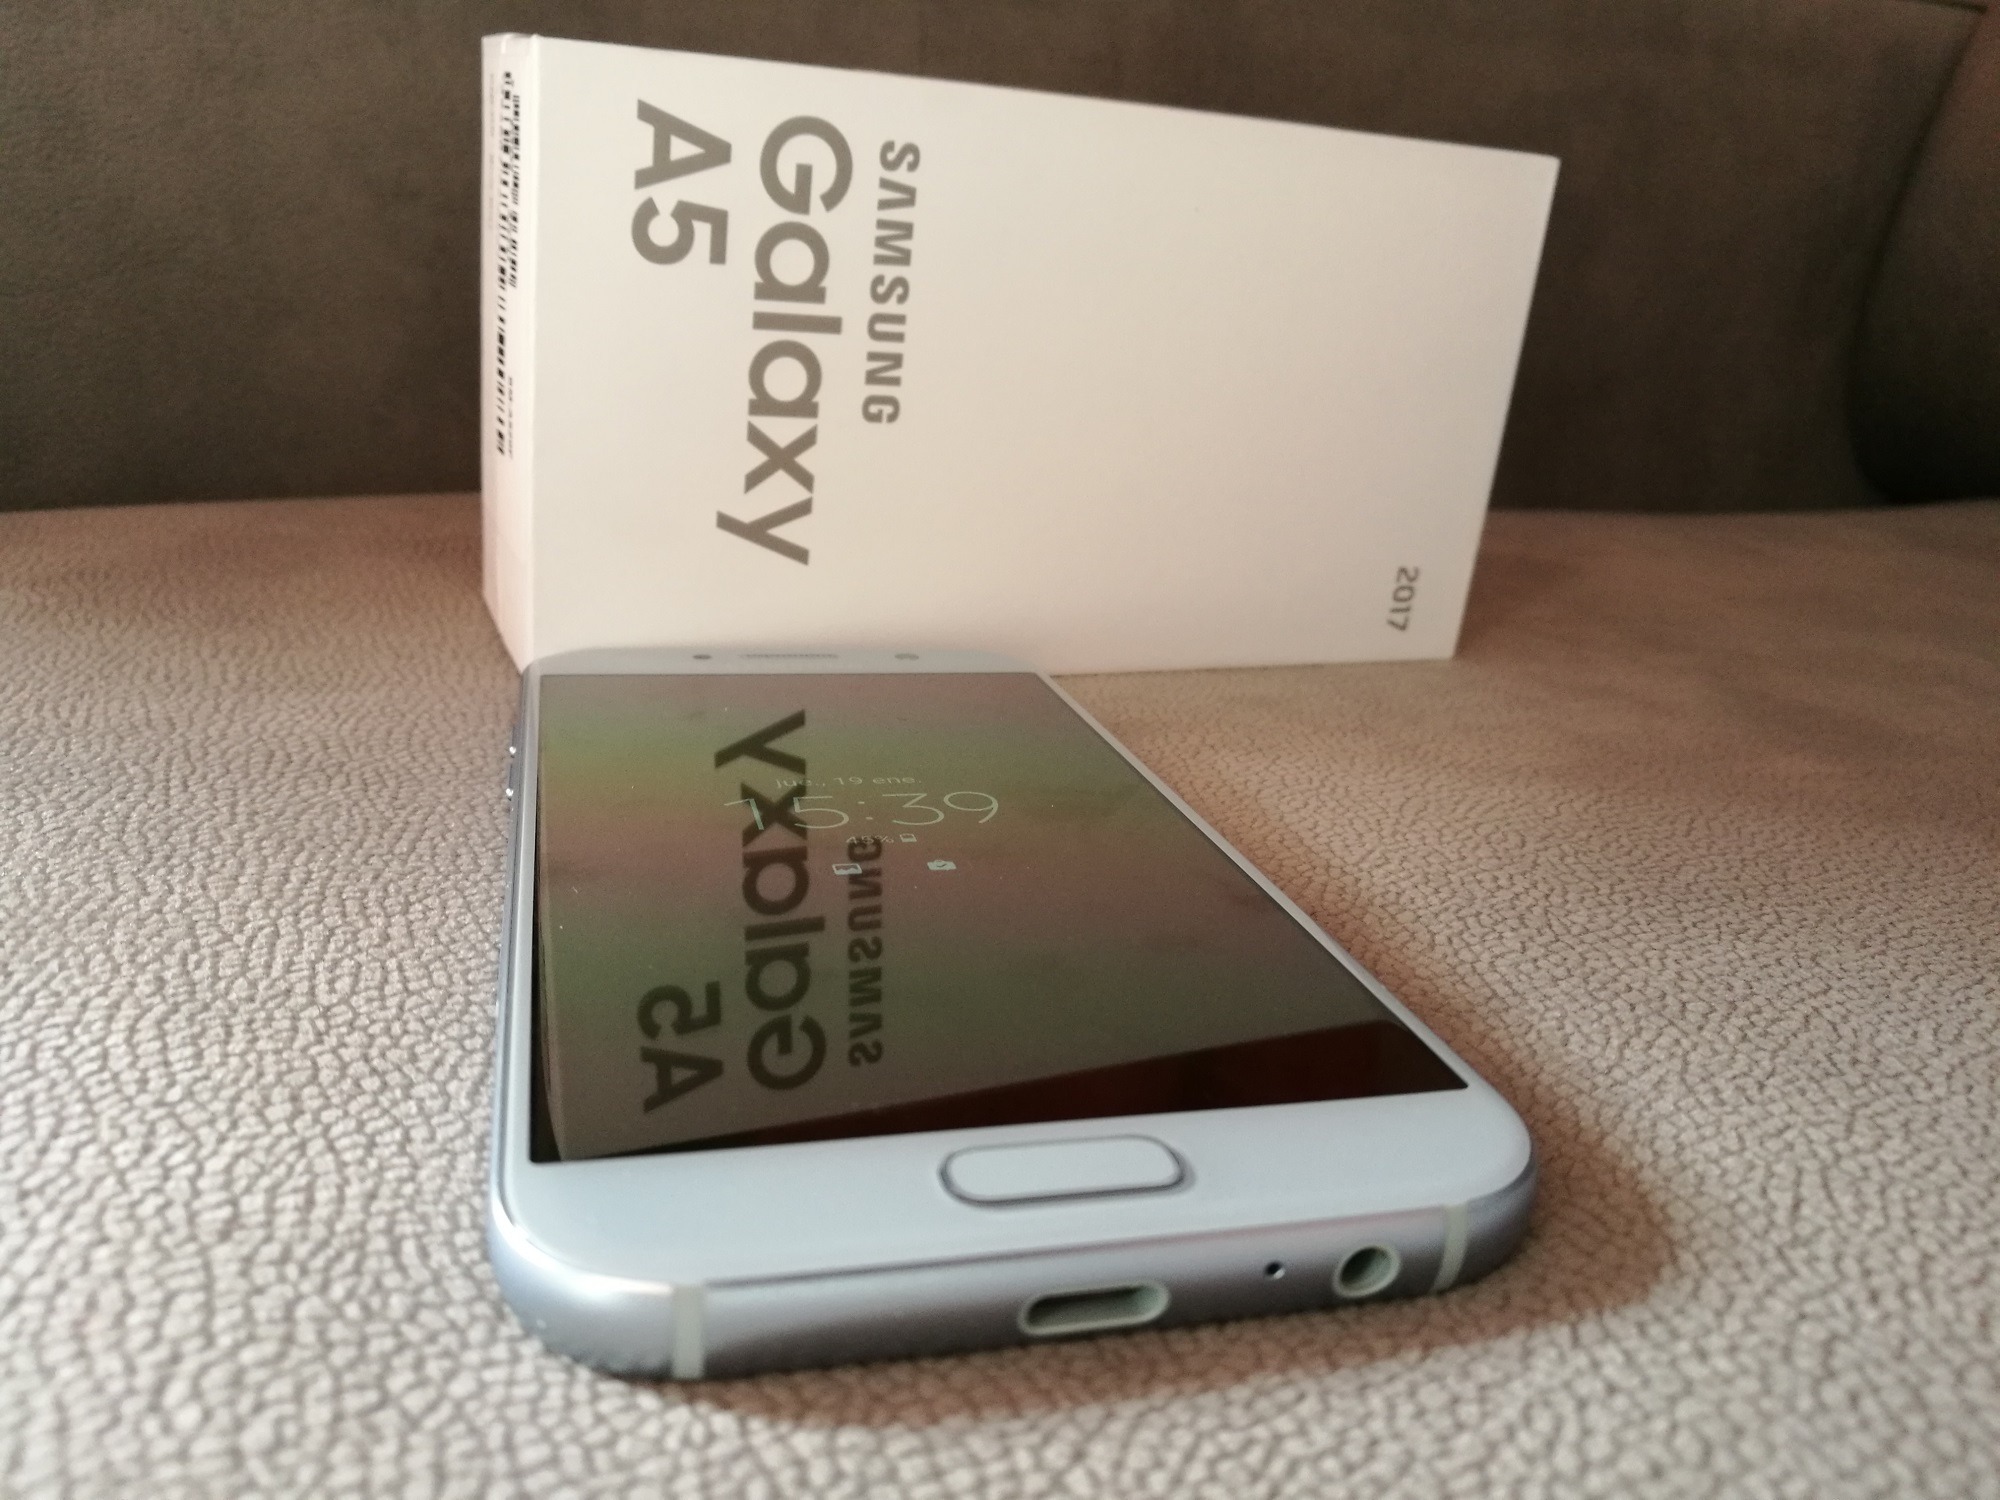 Samsung Galaxy A5 2017, lo hemos probado